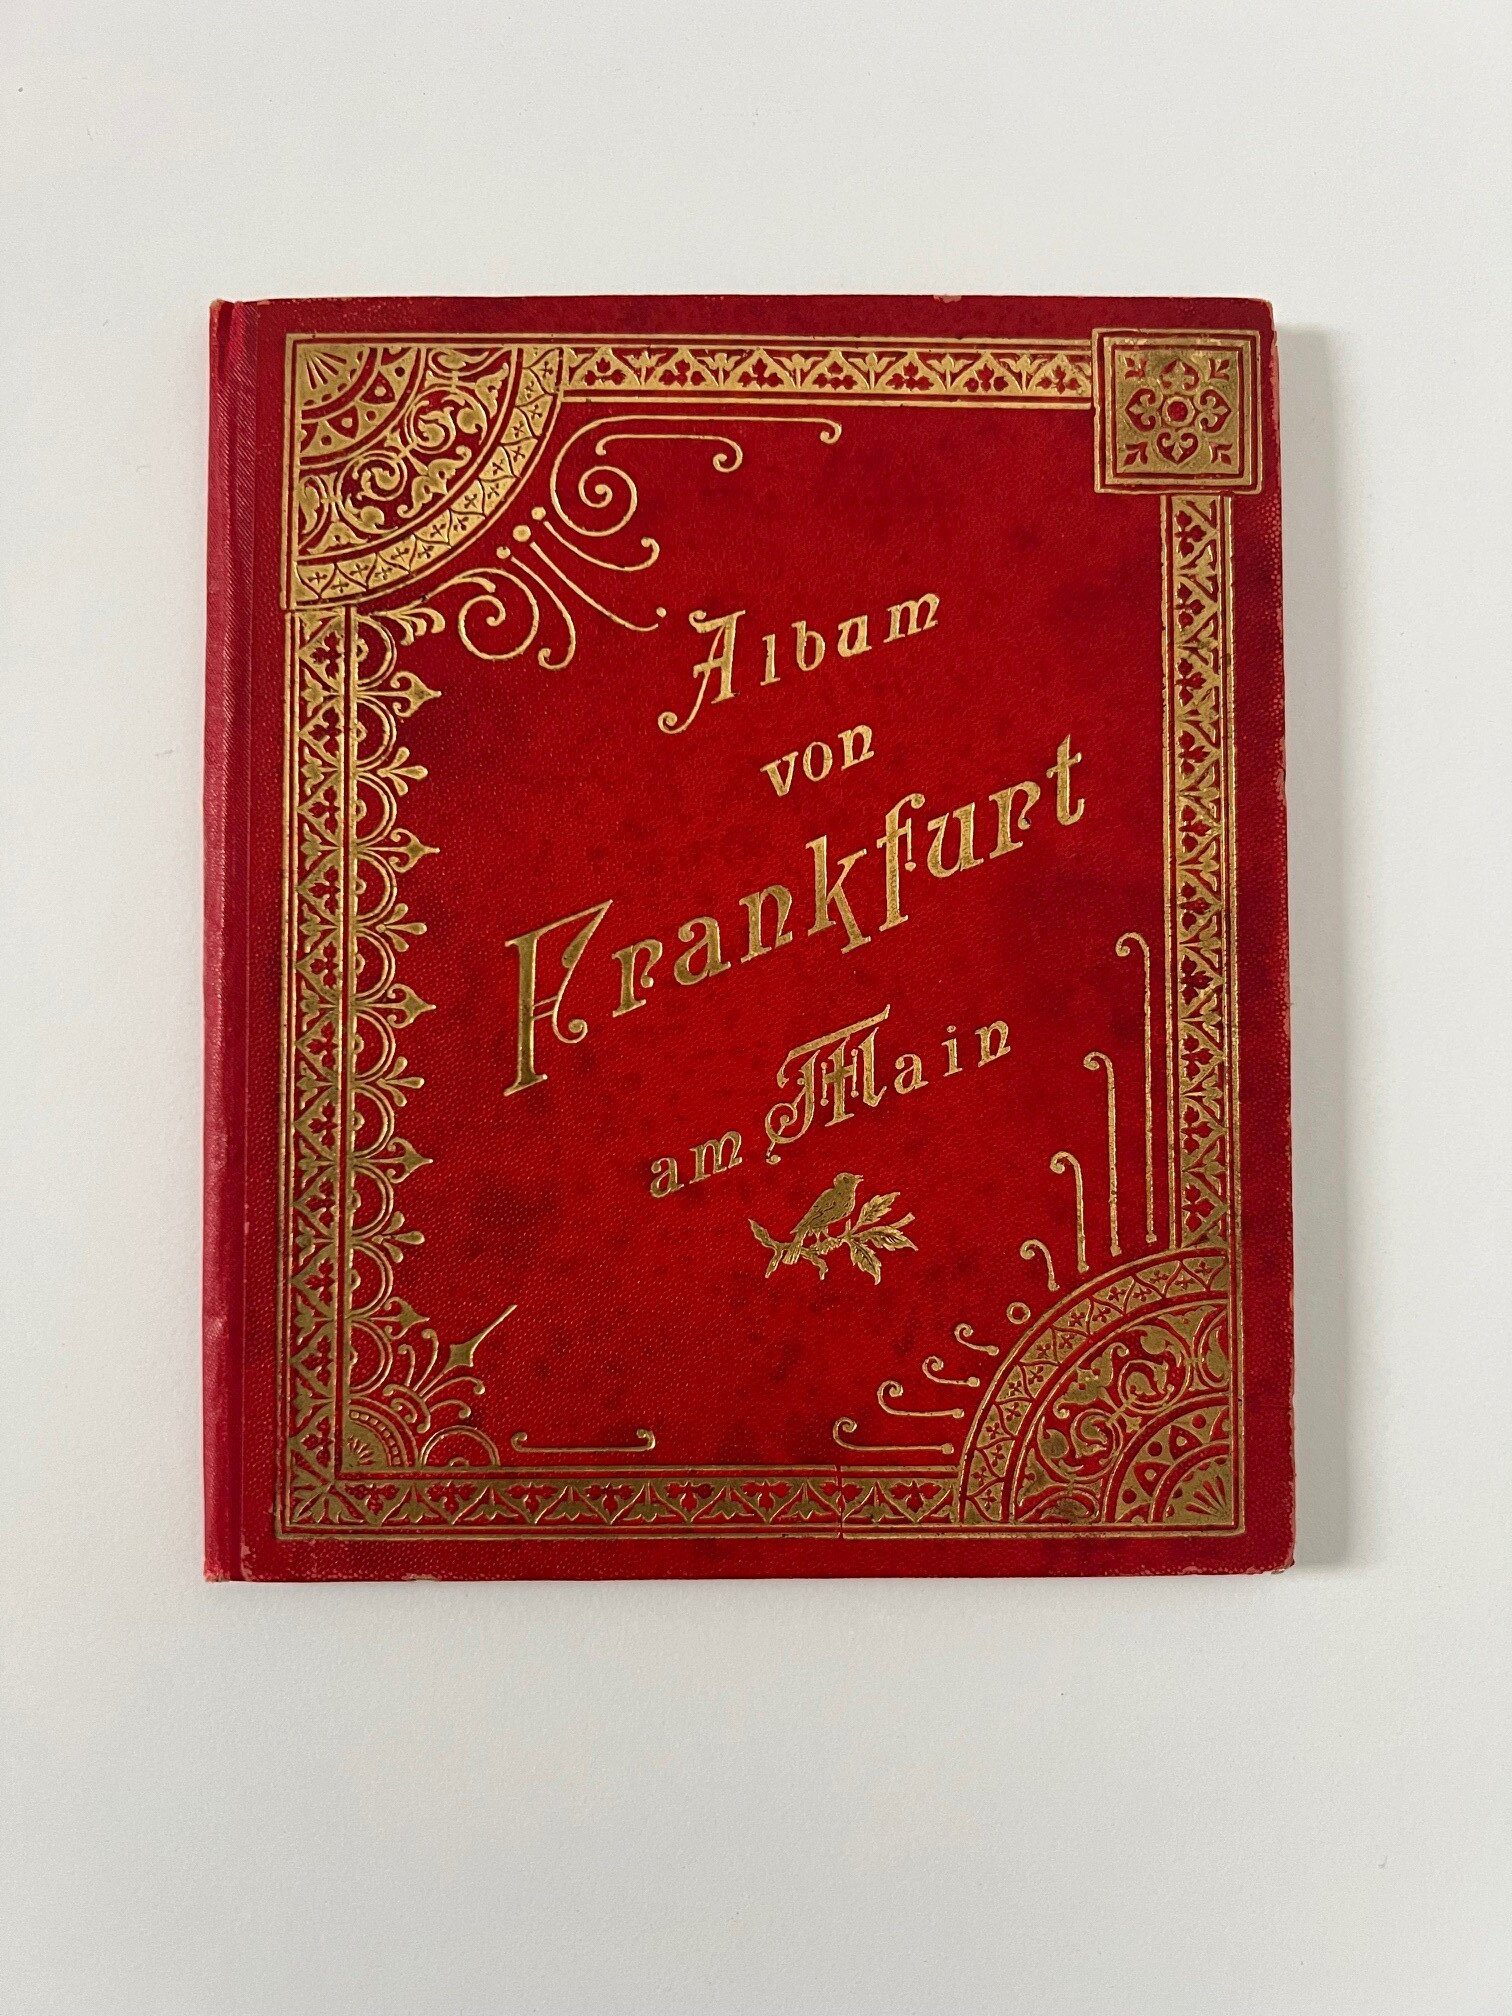 Verlag Gerhard Blümlein & Co, Album von Frankfurt am Main, 27 Lithographien als Leporello, ca. 1903. (Taunus-Rhein-Main - Regionalgeschichtliche Sammlung Dr. Stefan Naas CC BY-NC-SA)